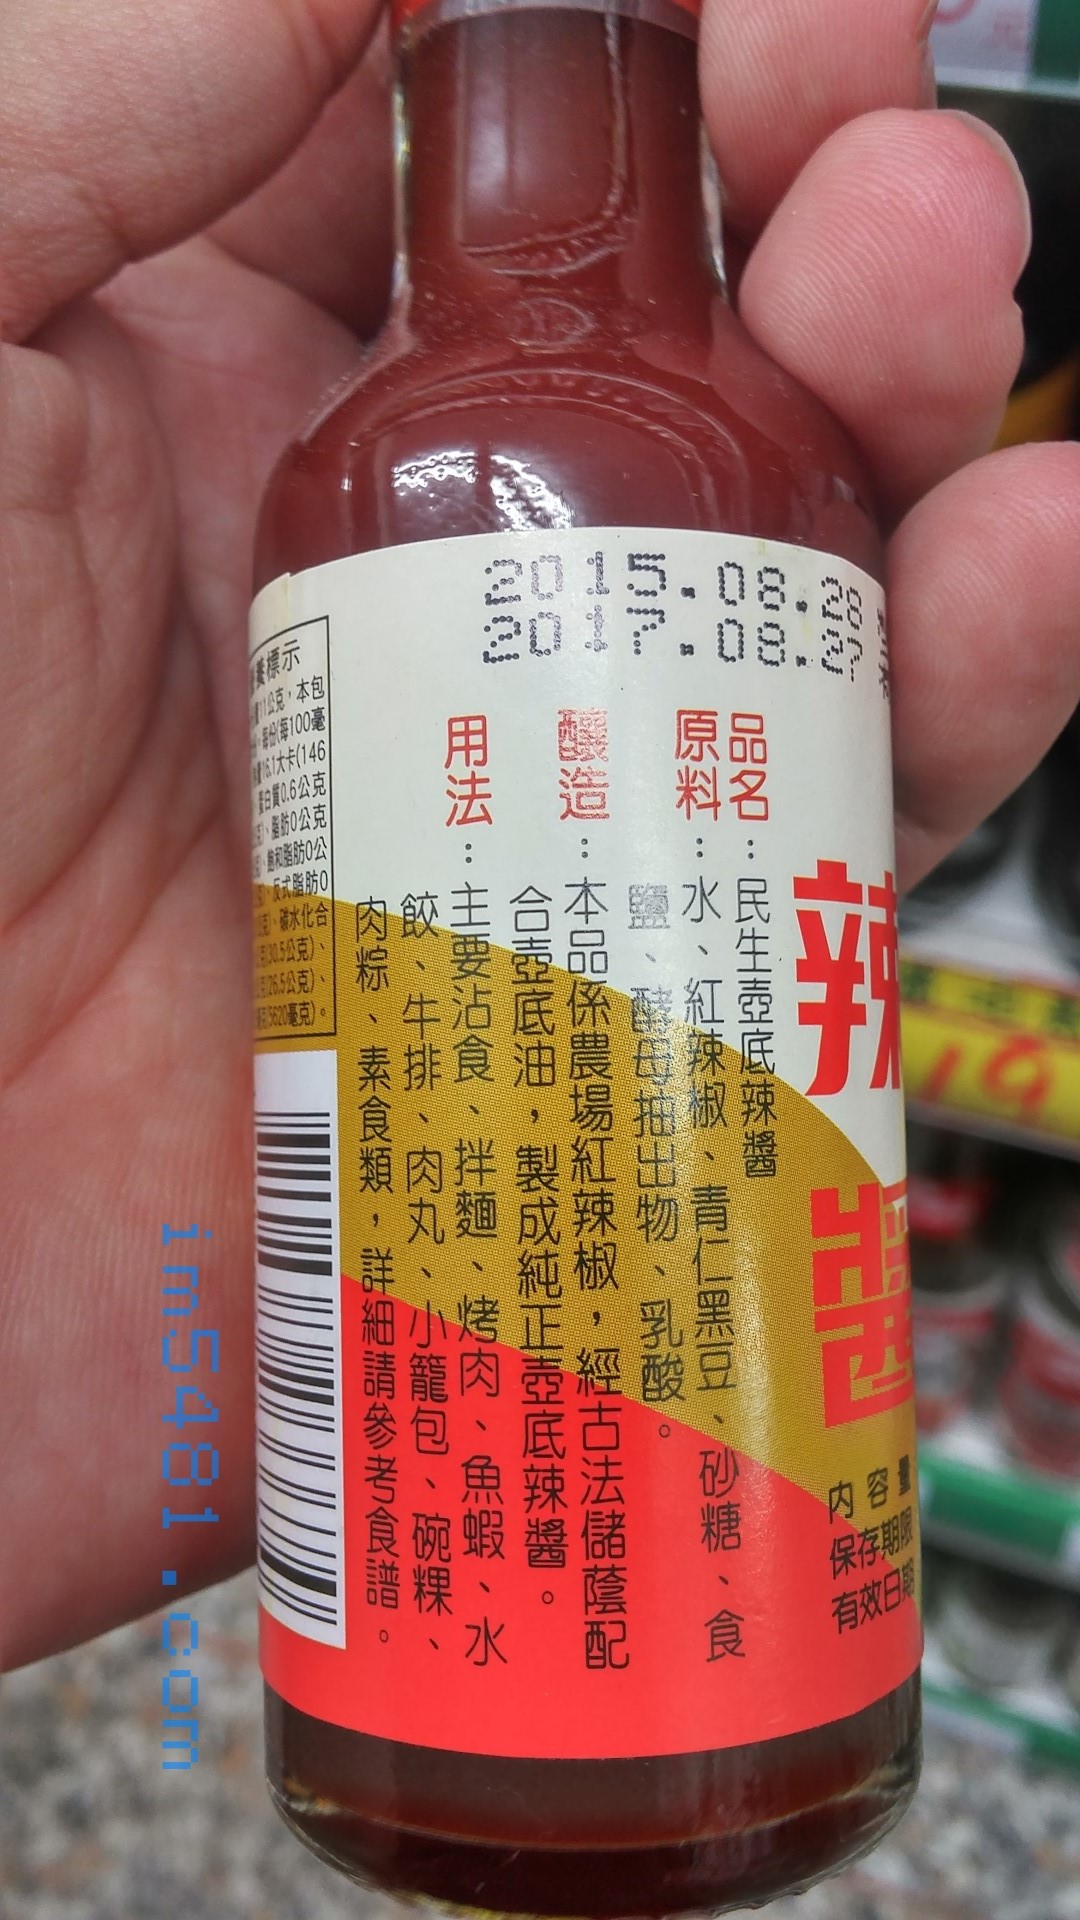 民生壺底辣醬是屬於發酵辣椒醬混合黑豆蔭油而成! 非常有台灣味!